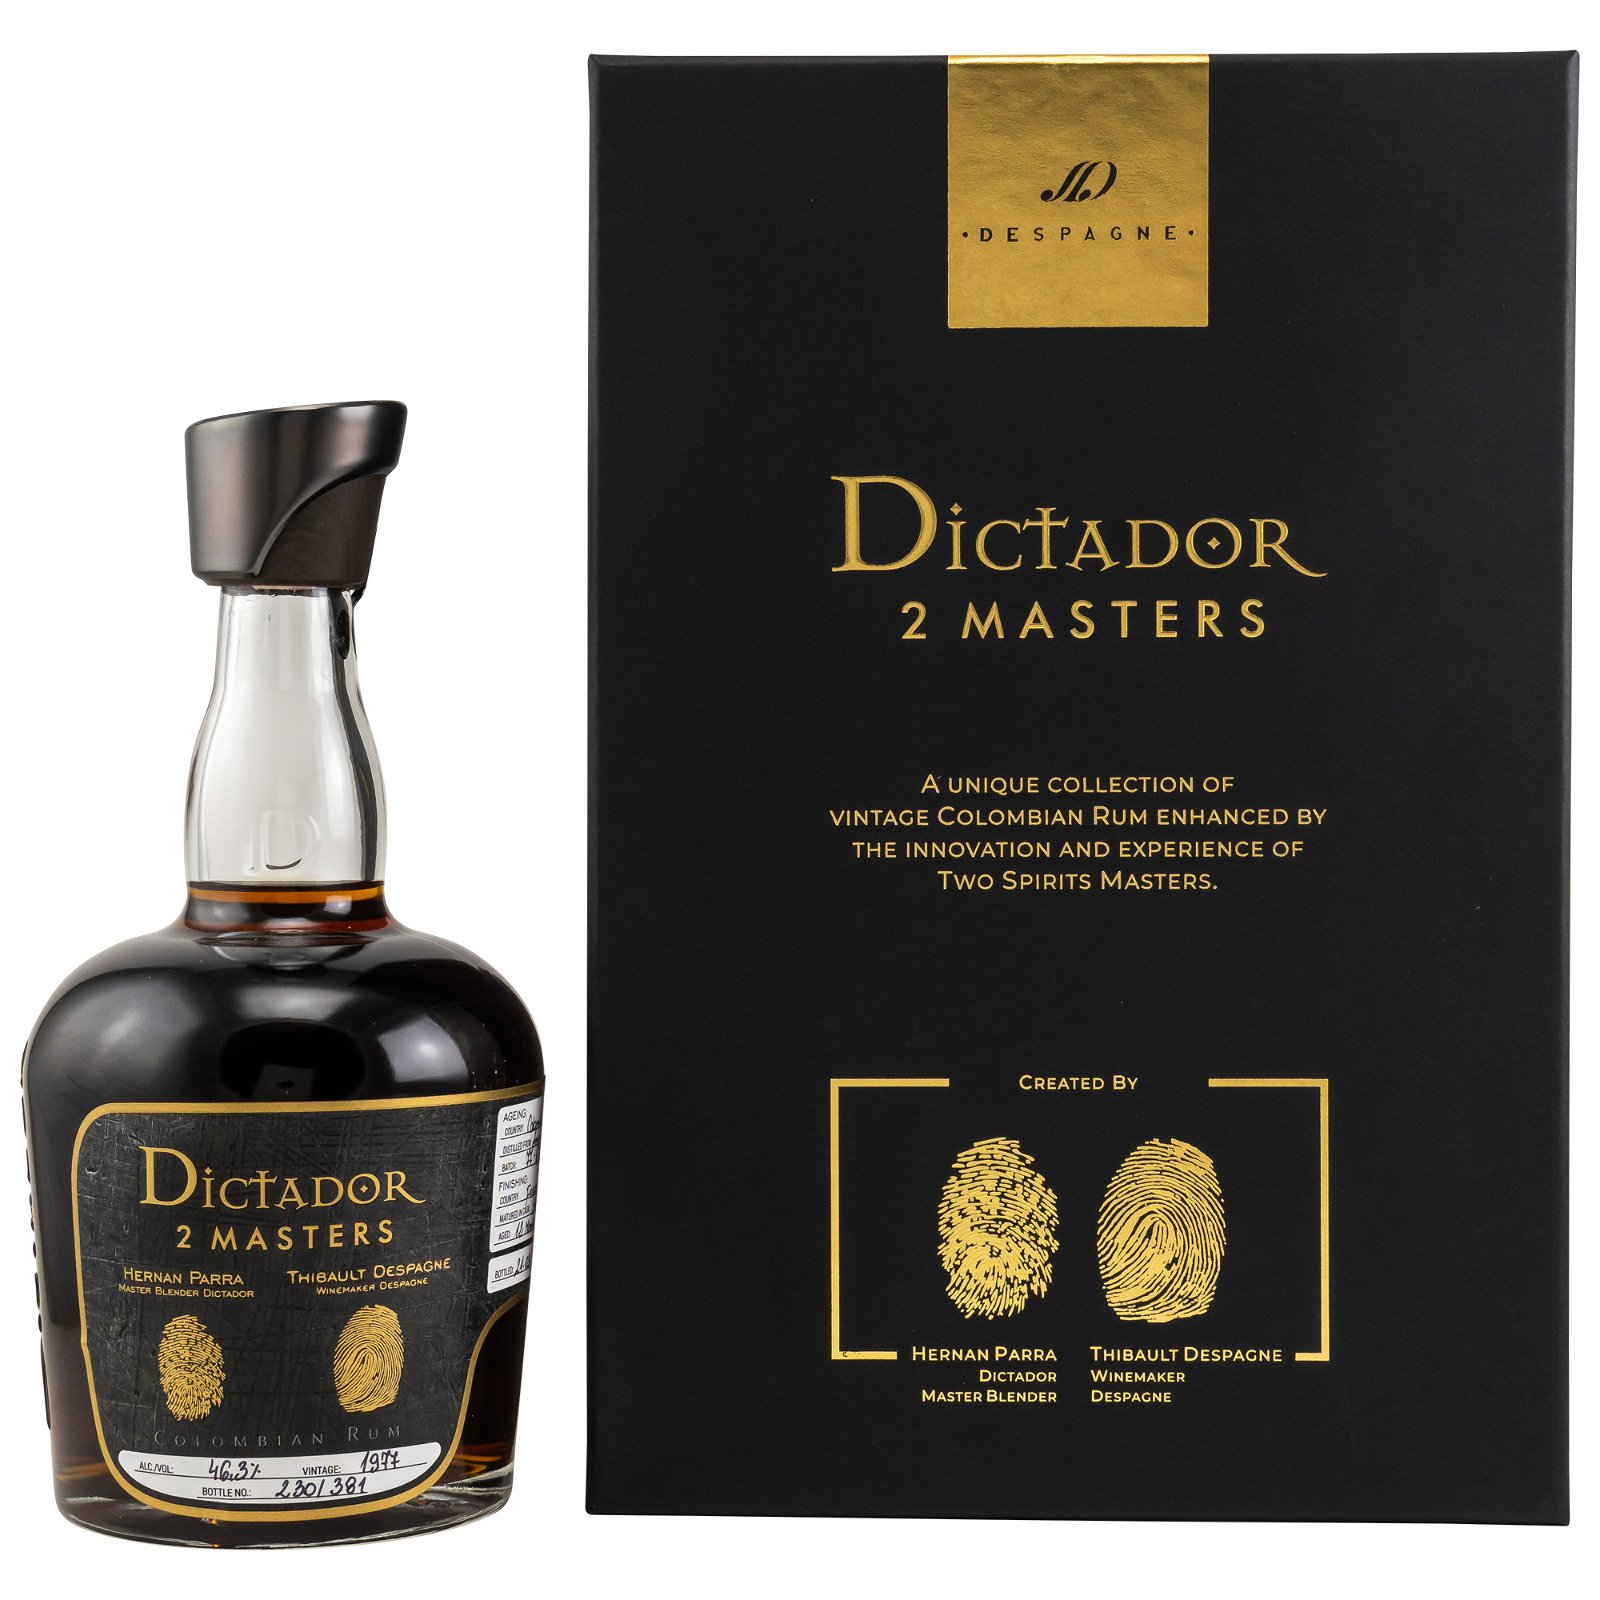 Dictador 2 Masters Despagne 1977/2019 - 40 Jahre Colombian Rum 